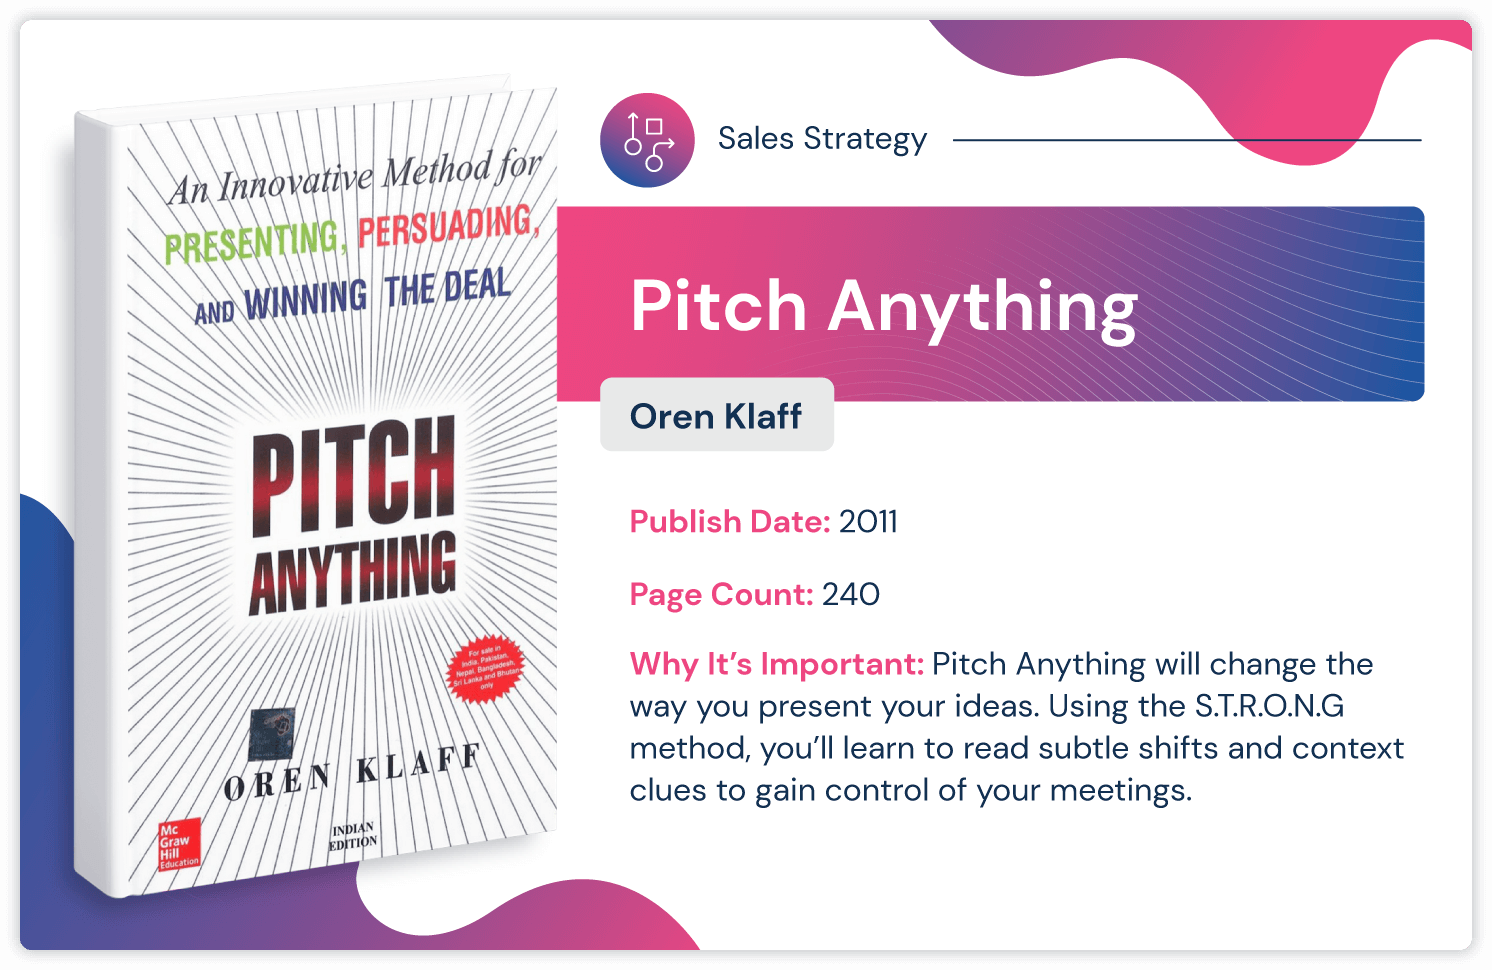 หนังสือกลยุทธ์การขาย "Pitch Anything" โดย Oren Klaff จัดพิมพ์ในปี 2011 และมีความยาว 240 หน้า